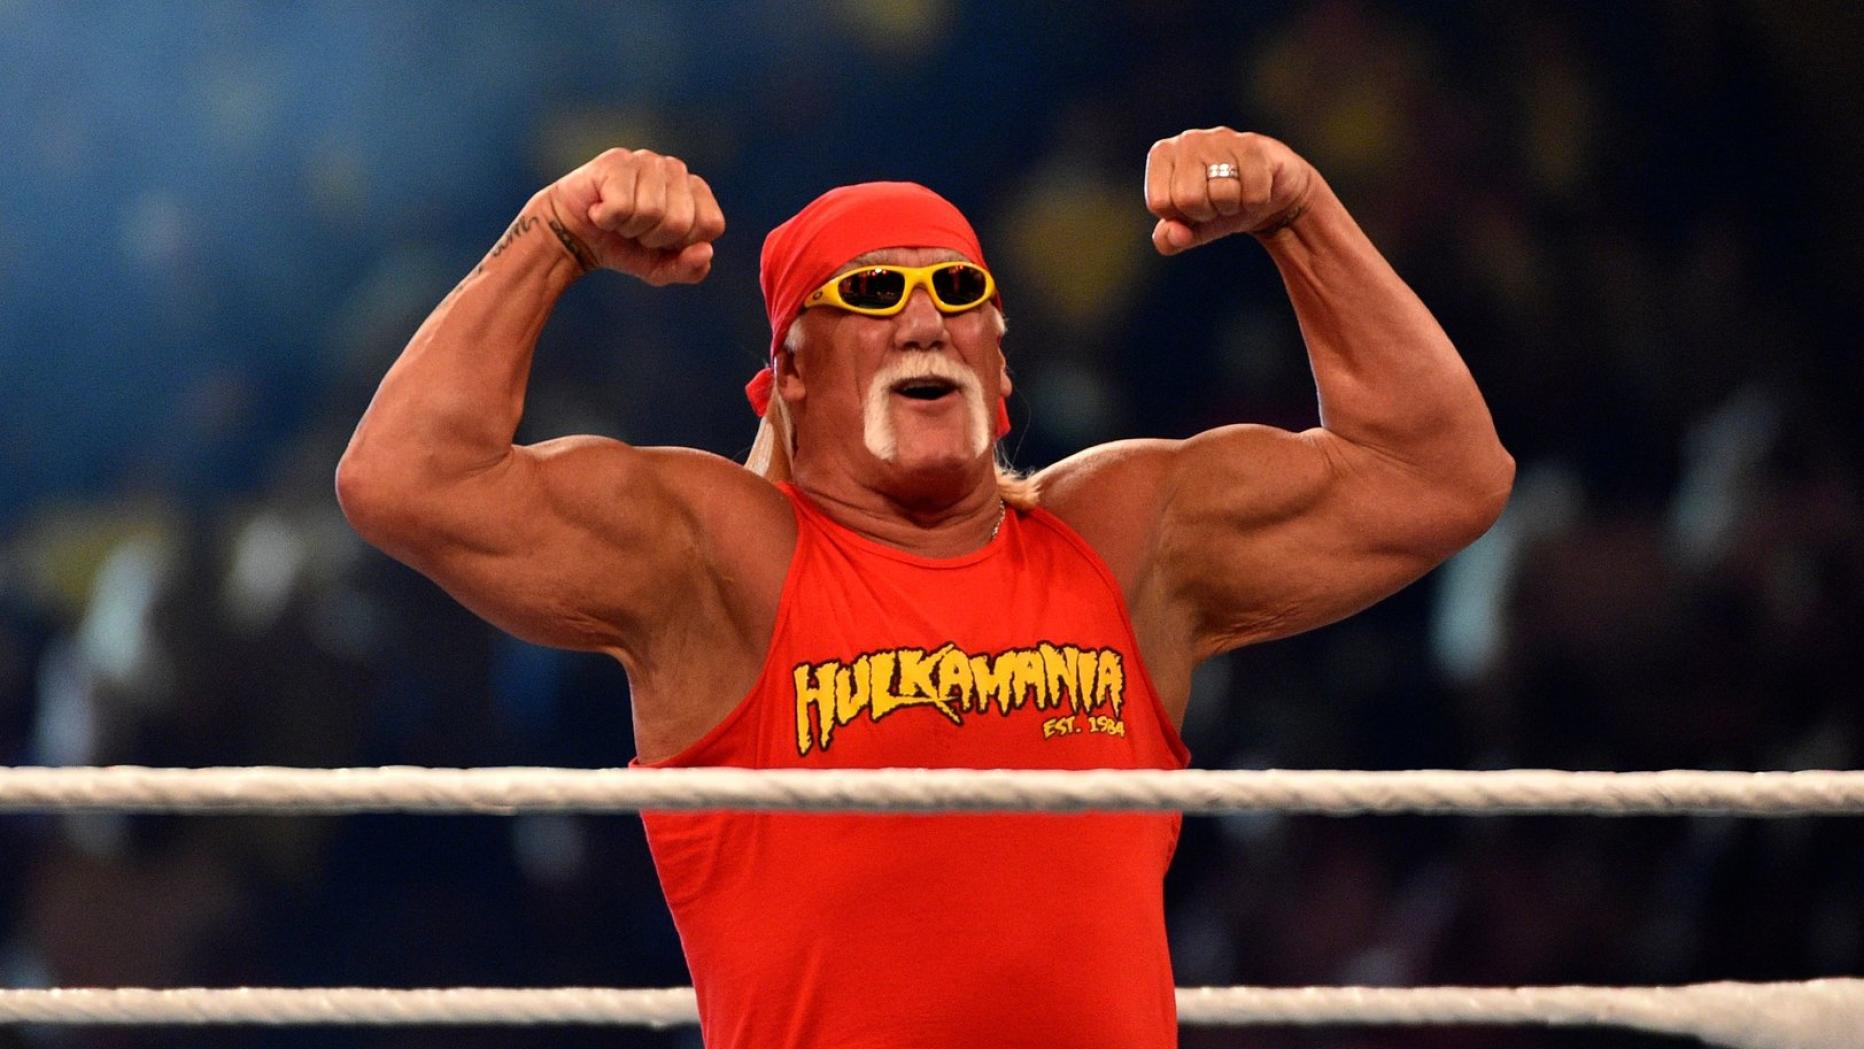 Beziehungschaos und Skandal-Sager Was treibt eigentlich Hulk Hogan? kurier.at Bild